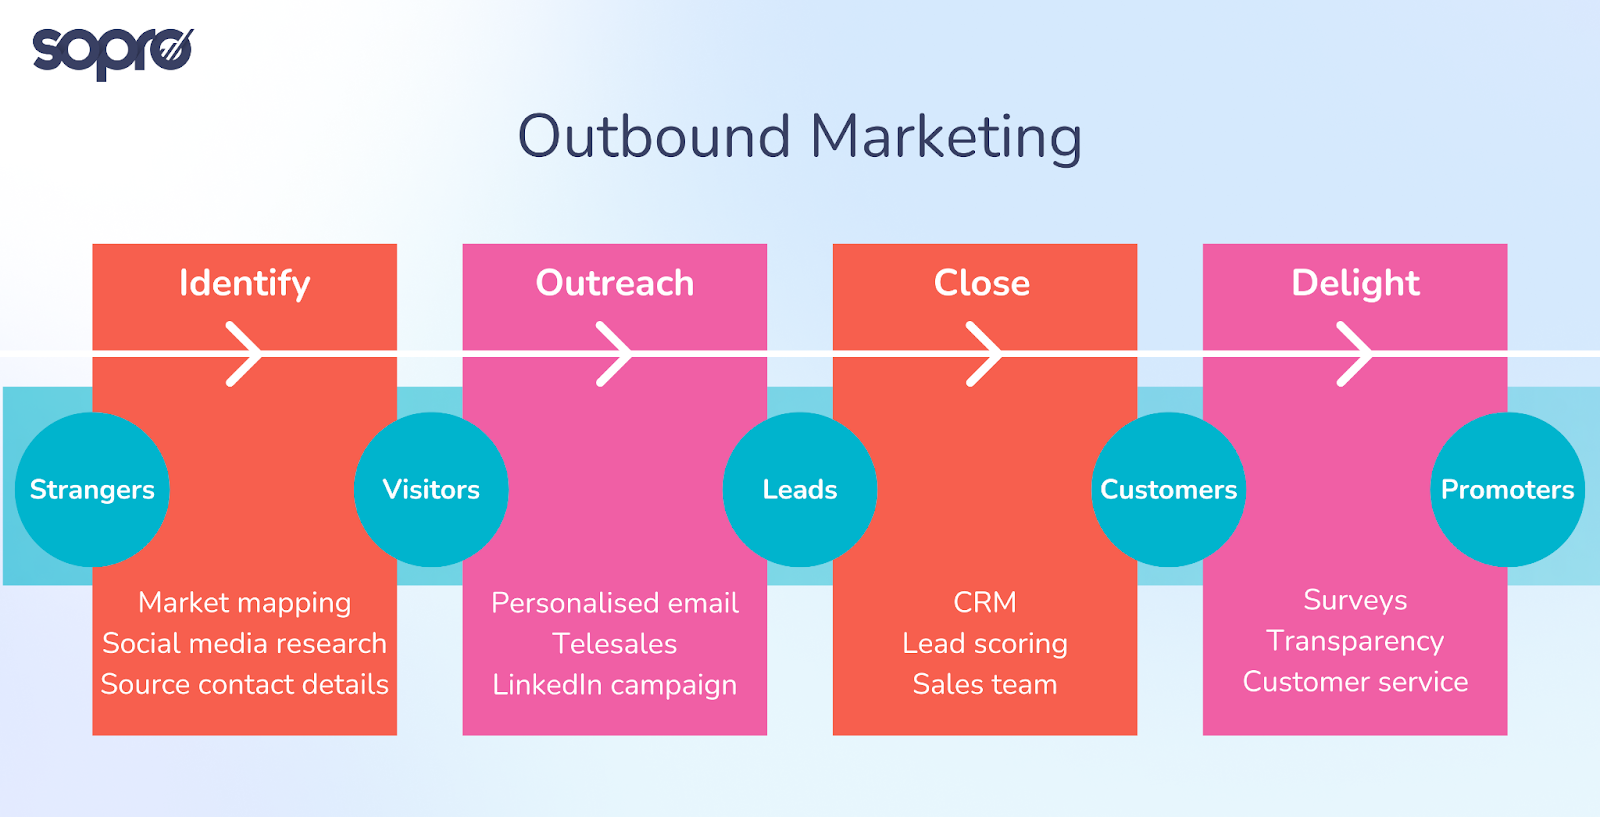 Outbound marketing - a visual run-through